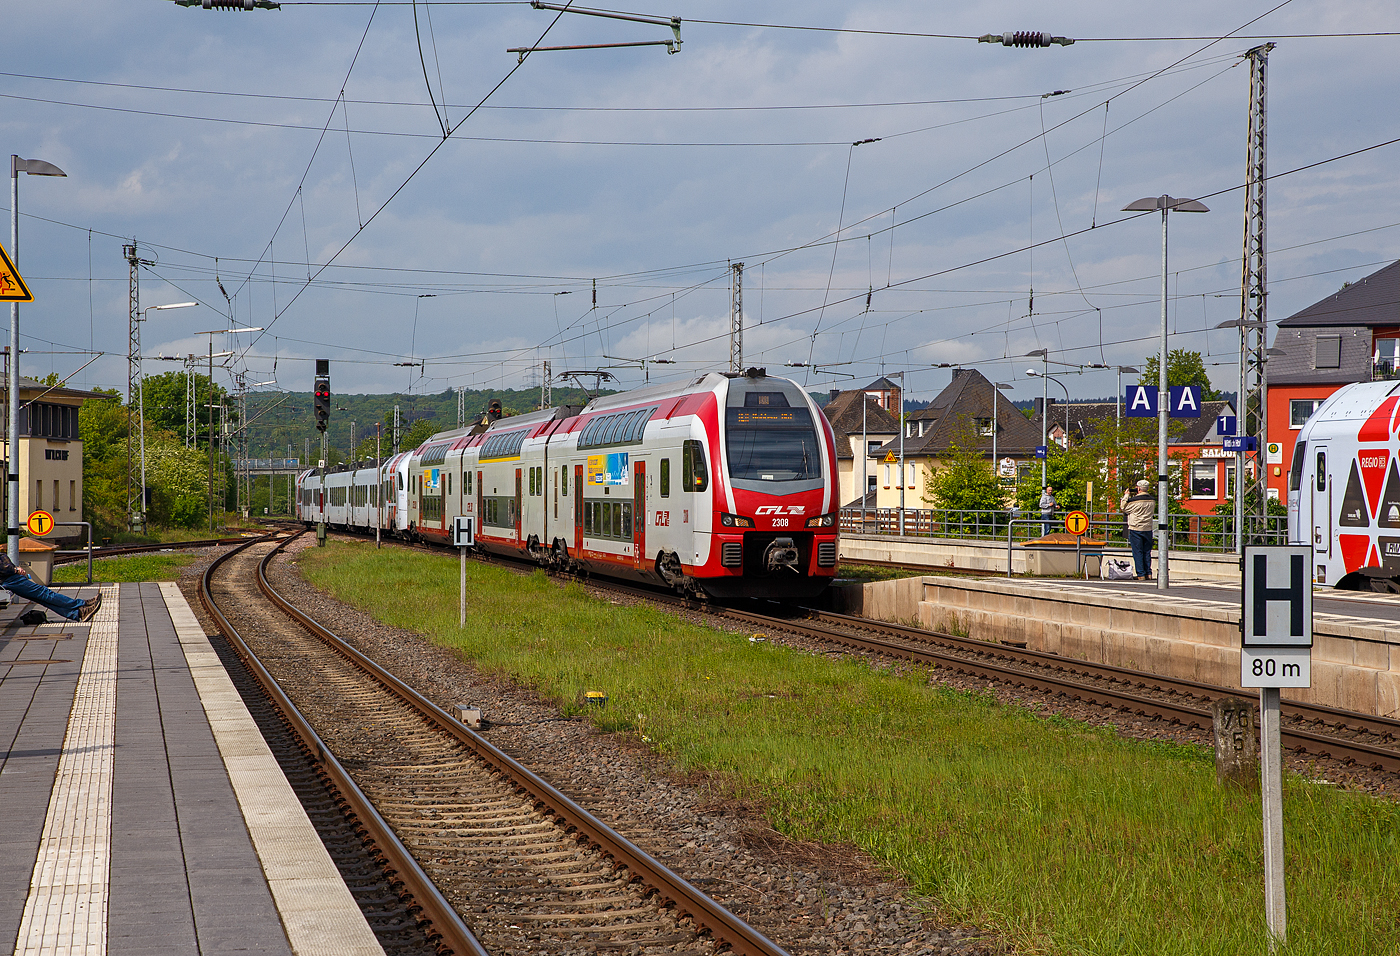 Der dreiteilige CFL Stadler KISS 2308 als RE 11  DeLux-Express  gekuppelt mit dem fünfteilige SÜWEX Stadler FLIRT³  - 429 116 / 429 616 als RE 1  Südwest-Express  nach Koblenz erreichen am 29.04.2018 den Hbf Wittlich, während in Gegenrichtung ein weiterer SÜWEX Stadler FLIRT³  mit einem CFL KISS halten.

Seit dem 16. März 2015 fahren die CFL-KISS auf dem Abschnitt zwischen Koblenz und Trier gemeinsam mit den FLIRT³  der DB Regio Südwest in gemischter Mehrfachtraktion. Das ein- und zweistöckige elektrische Triebzüge zweier Staatsbahnen gemeinsam unterwegs sind, dürfte europaweit einmalig sei. Ab dem 10.12.2017 fahren einzelne CFL KISS von Koblenz weiter über Bonn und Köln Hbf bis nach Düsseldorf.
